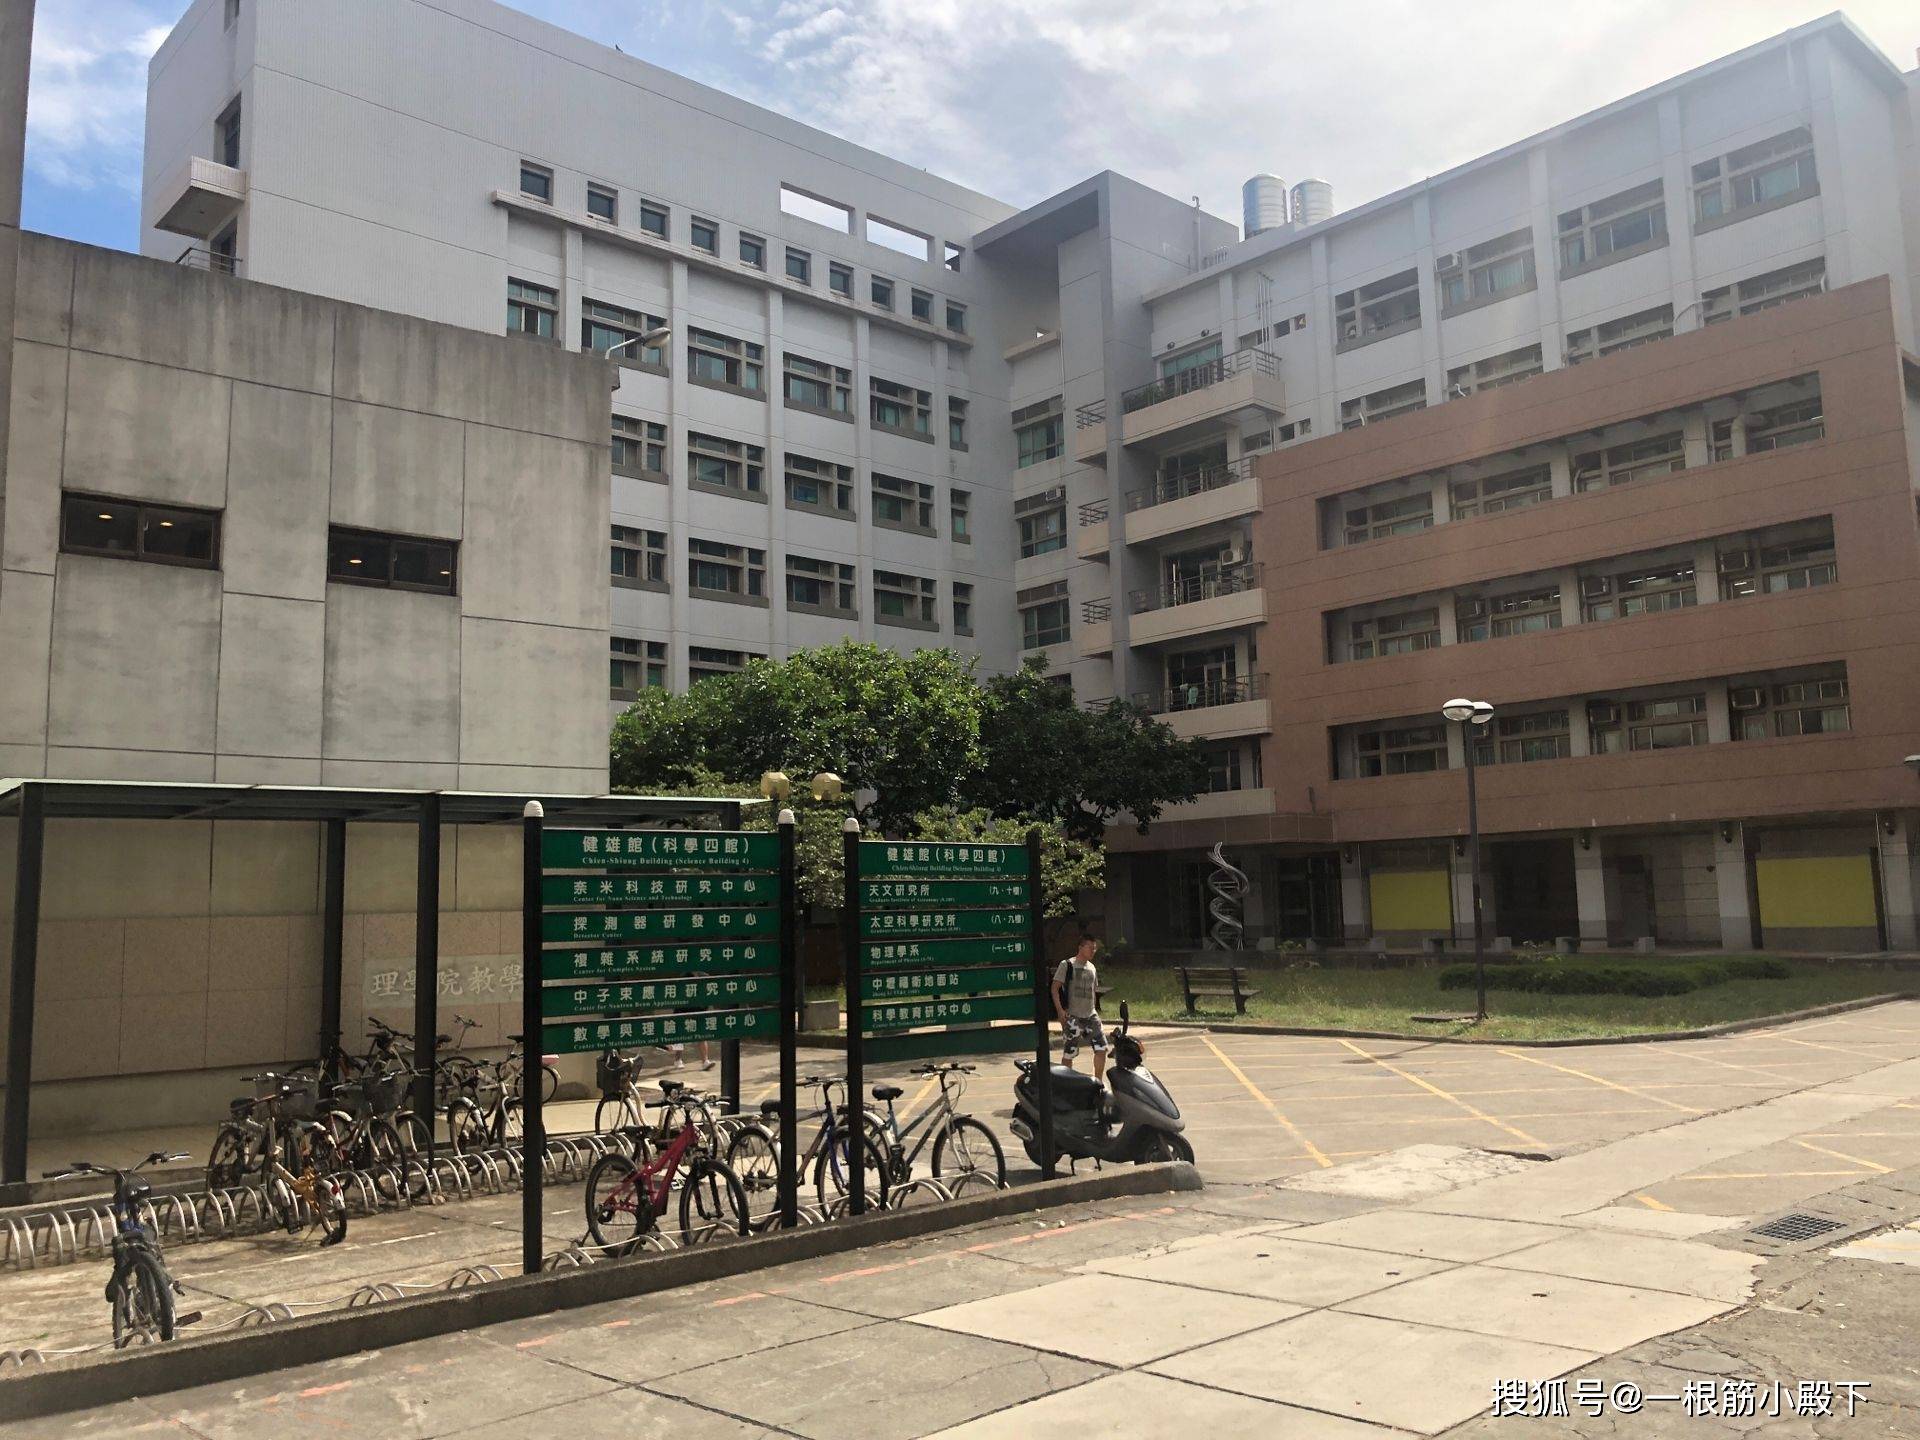 「院校相册」走进校园:台湾中央大学风景实拍图